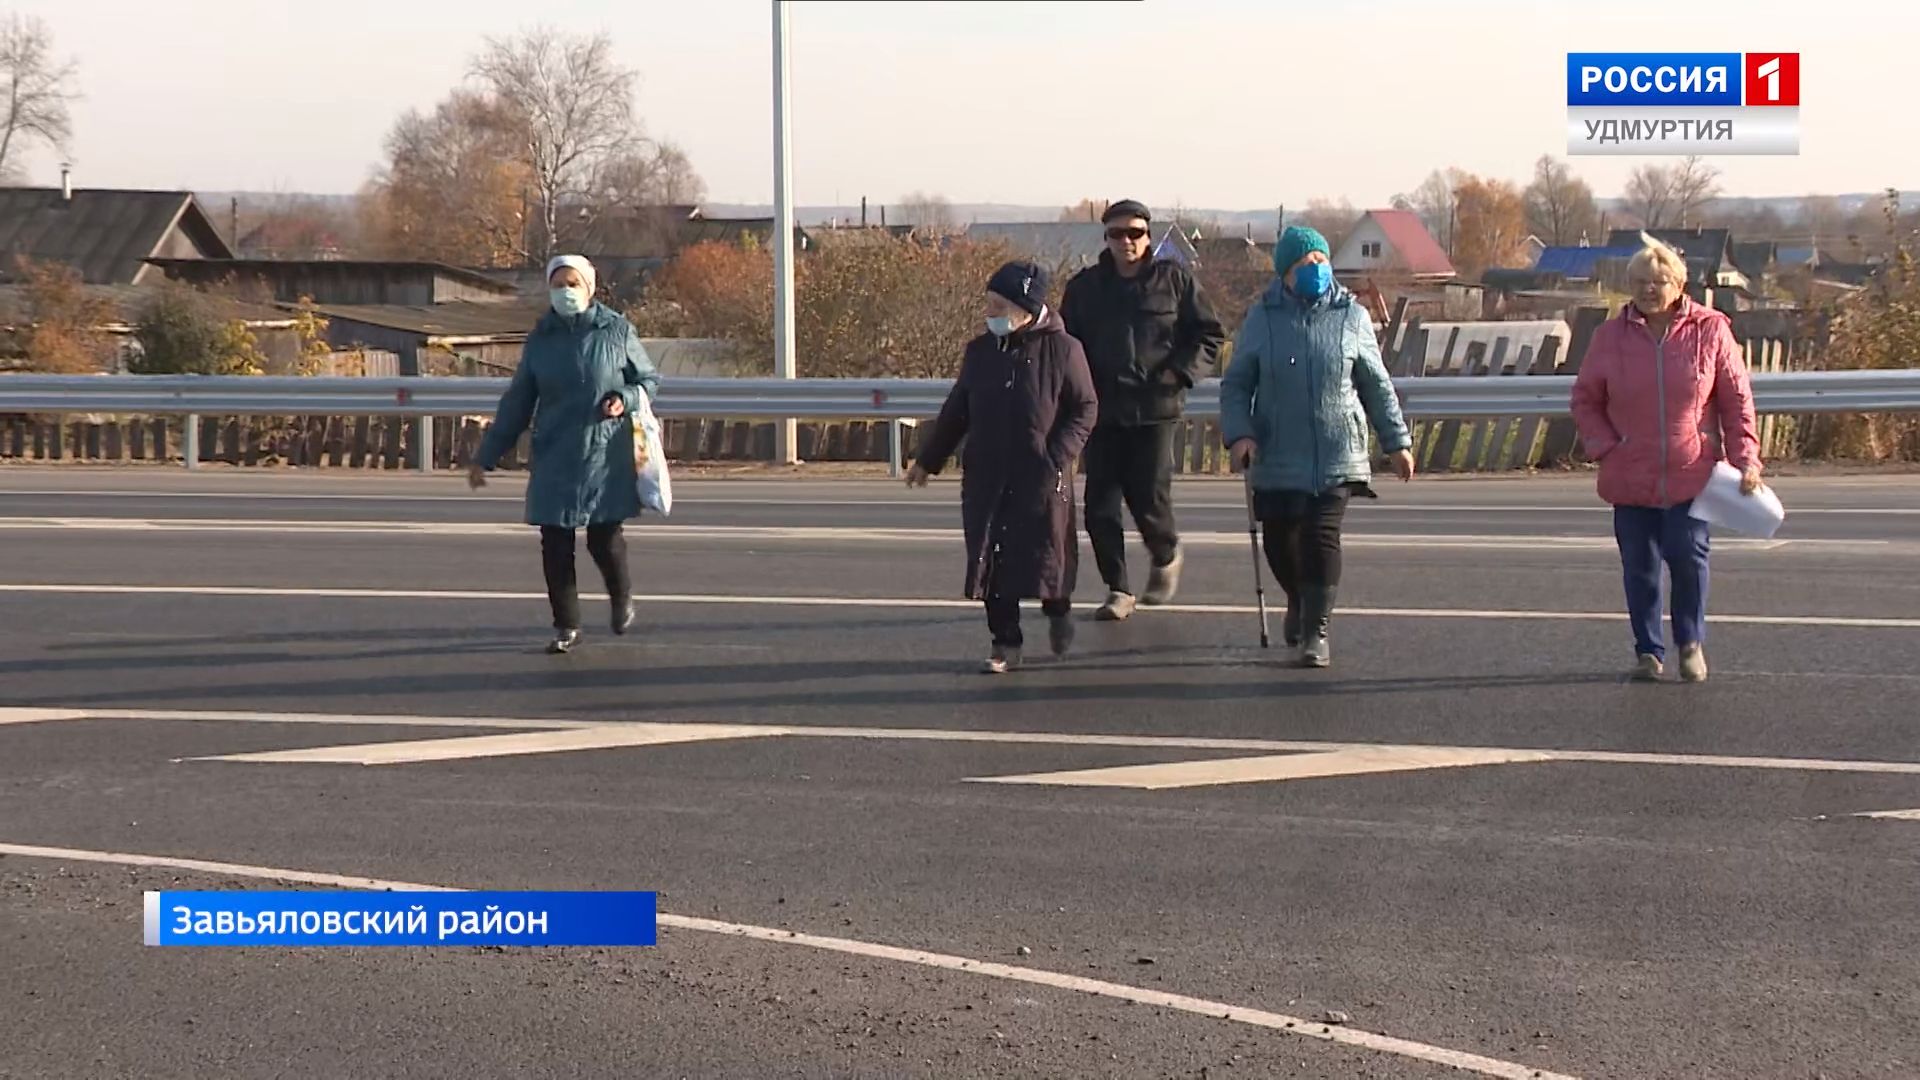 

Жители деревни под Ижевском после ремонта трассы попросили вернуть им пешеходный переход

